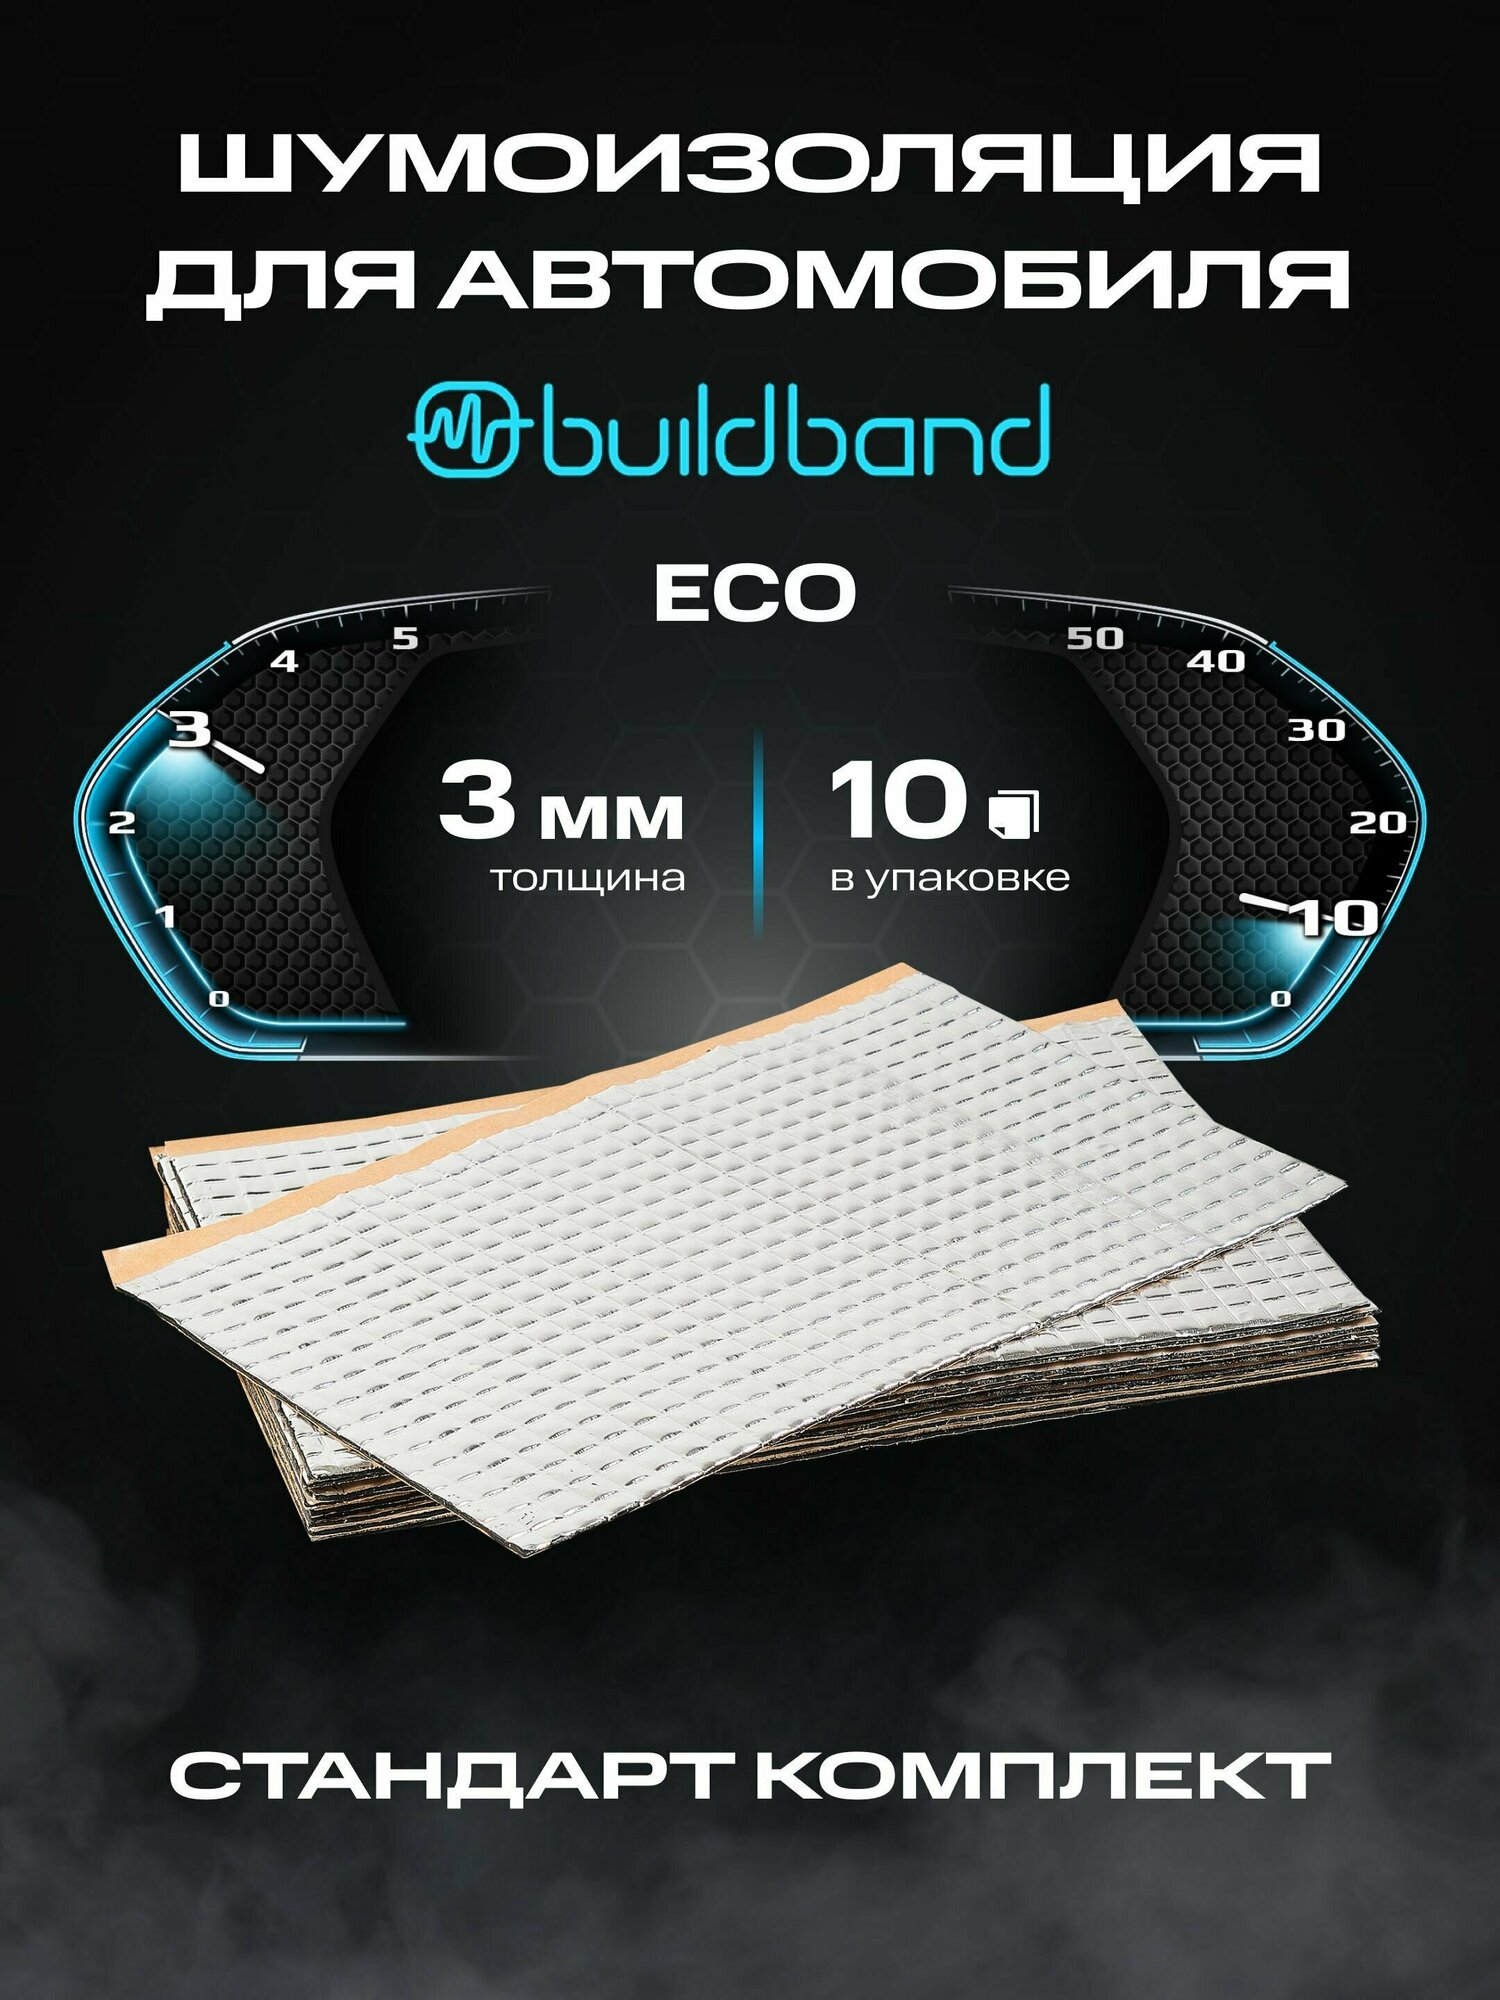 Шумоизоляция buildband ECO 3, комплект 10 листов/ Шумка для машины самоклеящаяся/ звукоизоляция